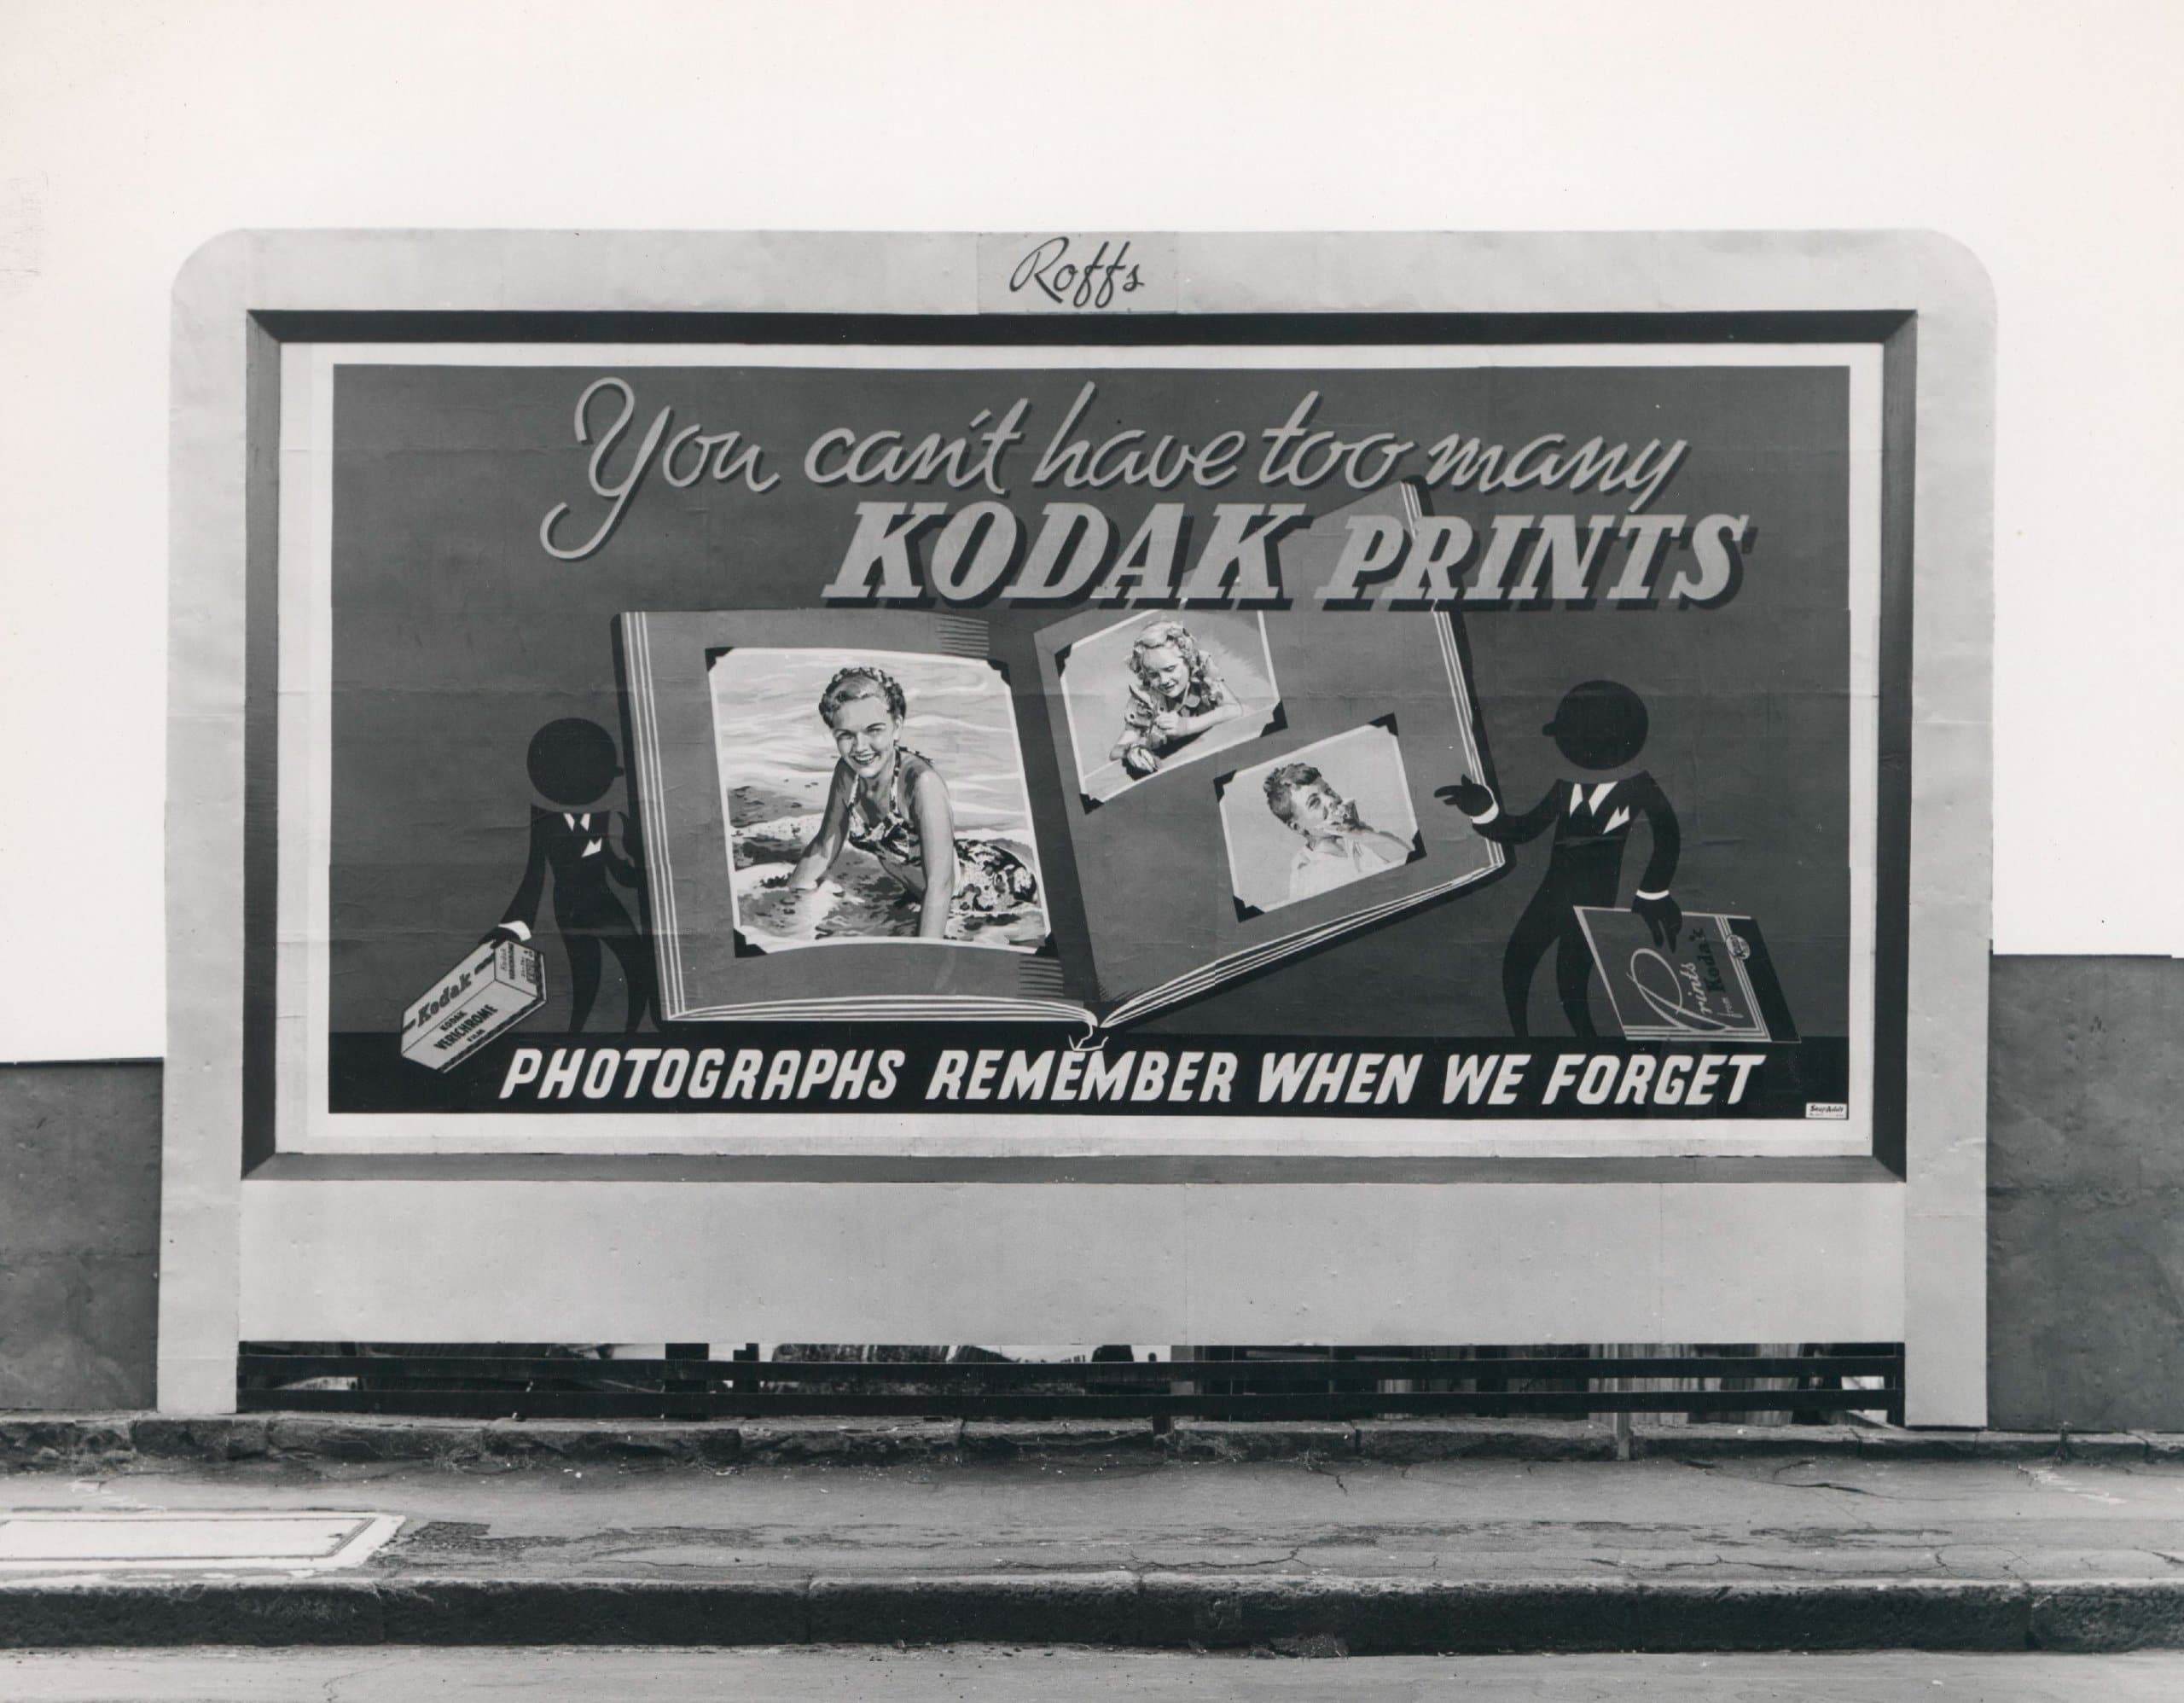 Kodak Aktie kaufen oder nicht